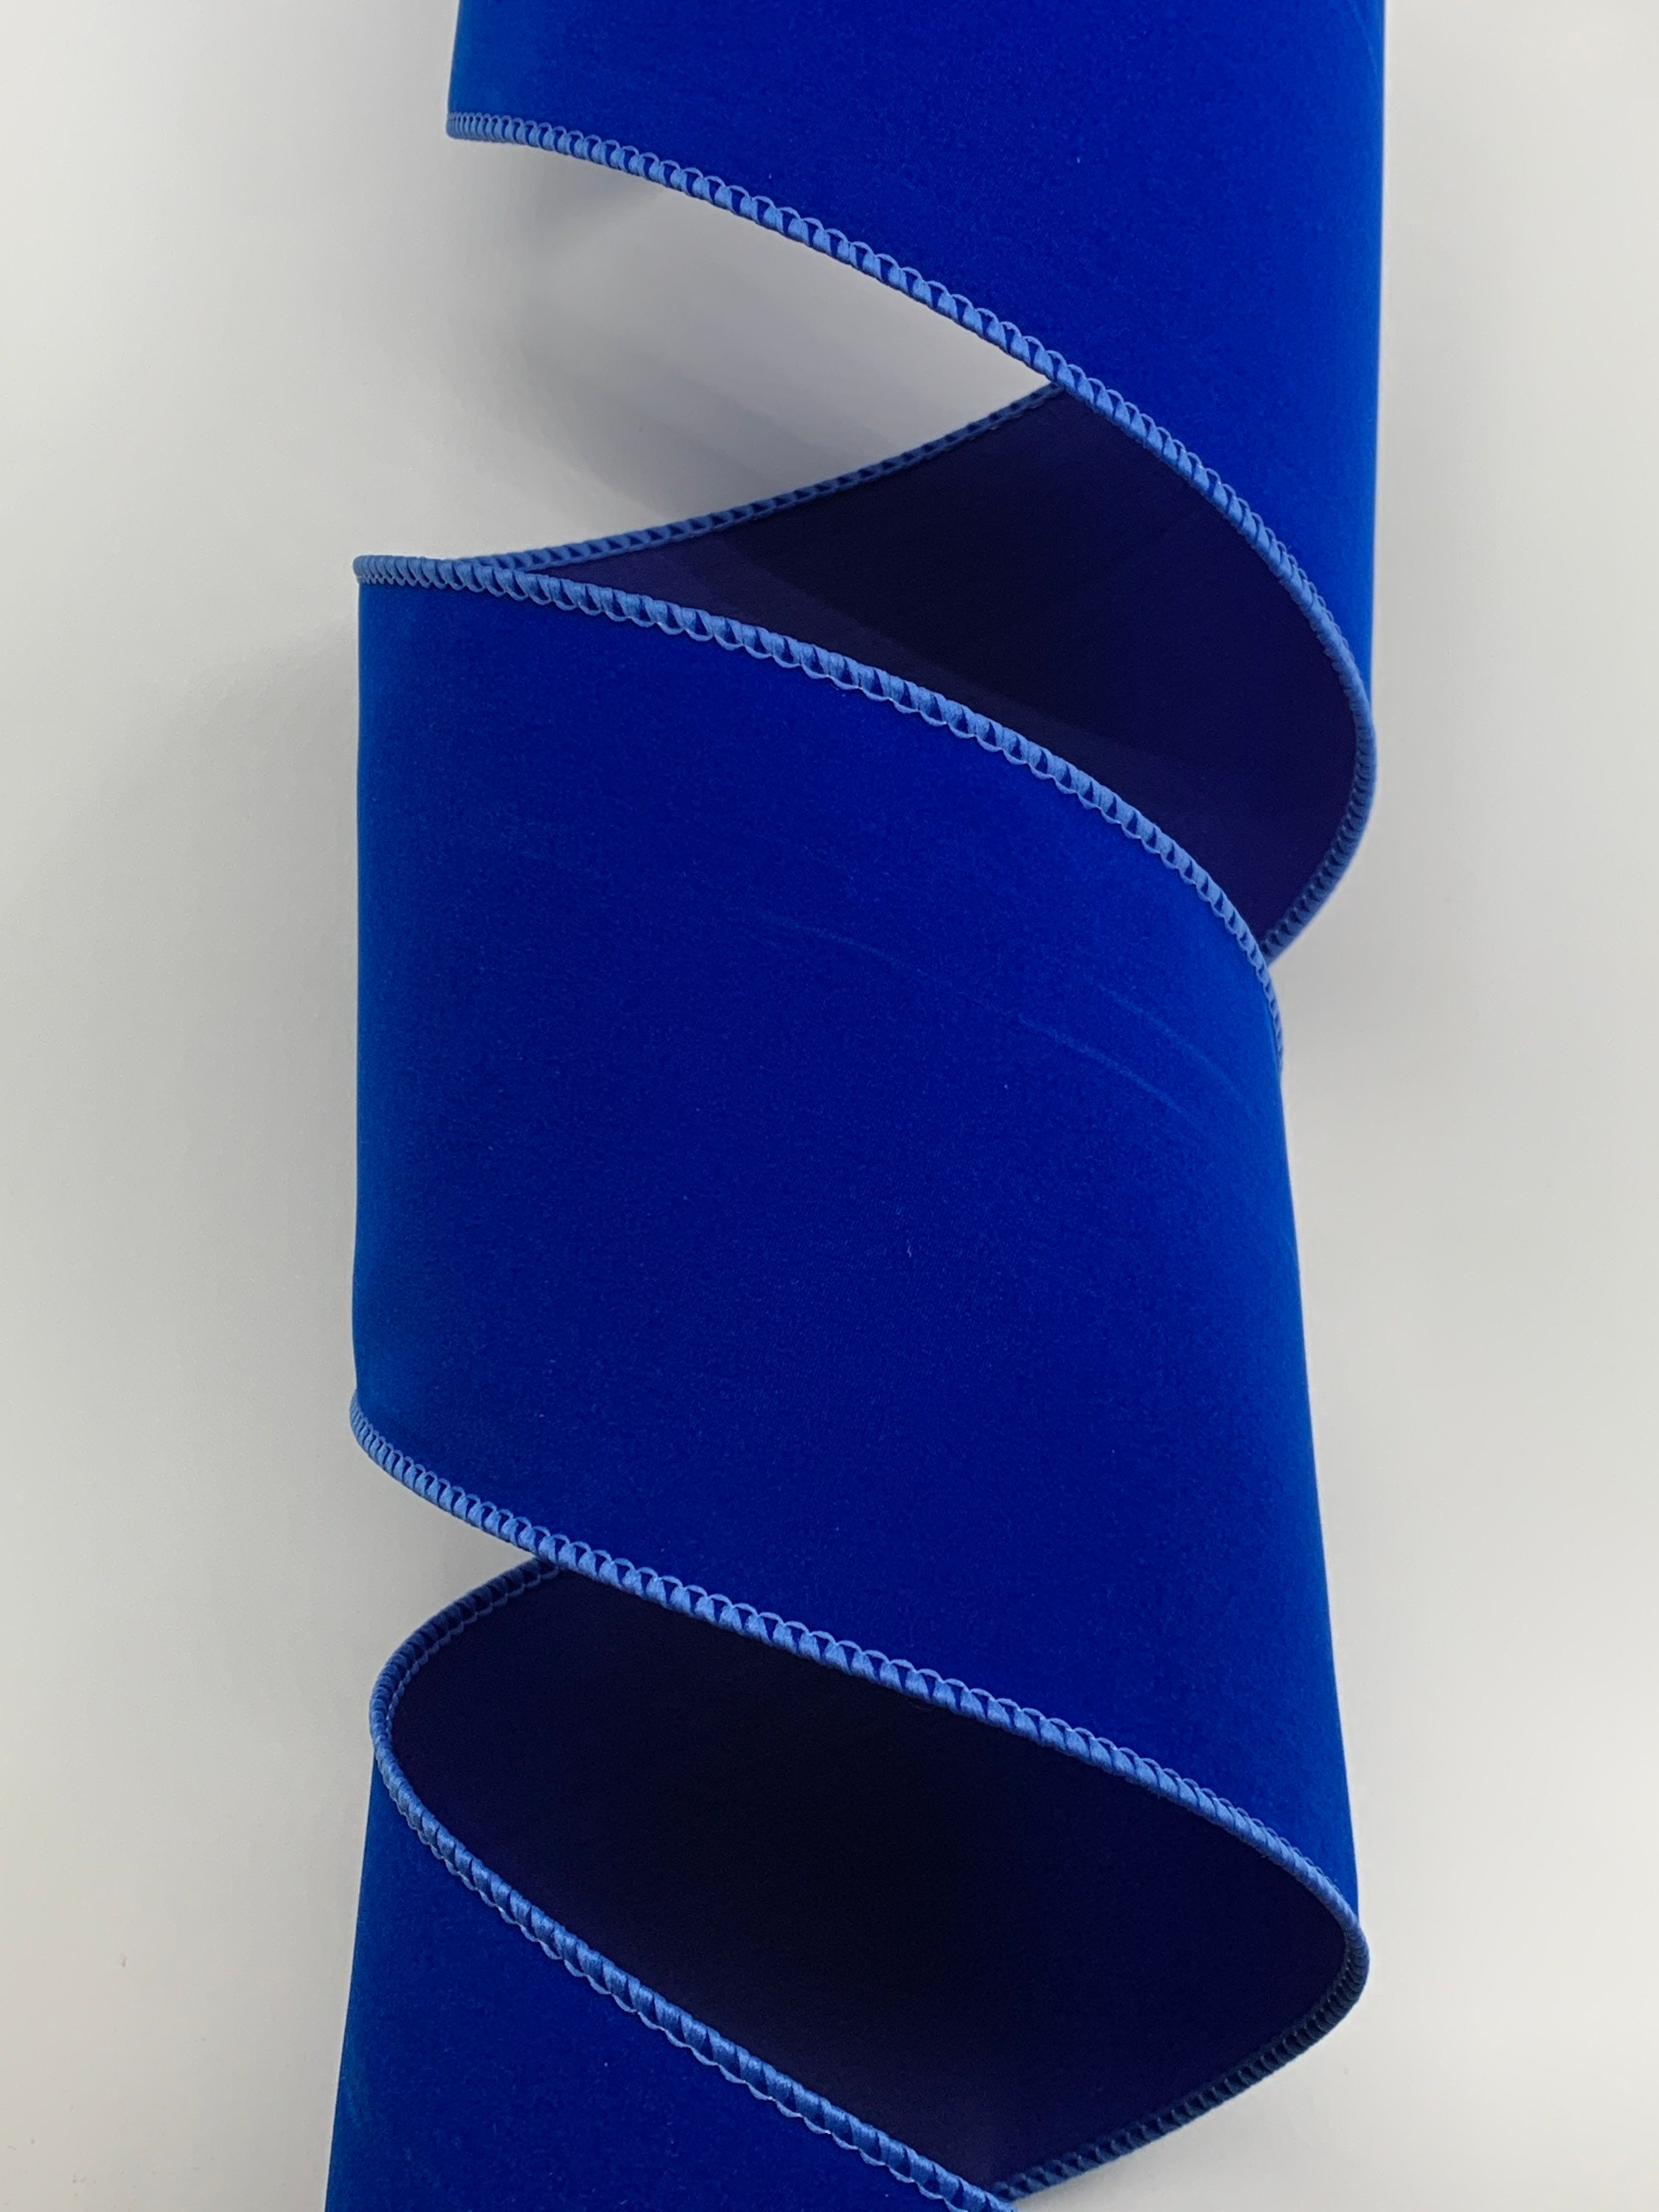 2.5 or 4 Royal Blue Velvet Ribbon Wired Edges 10 Yard Roll 